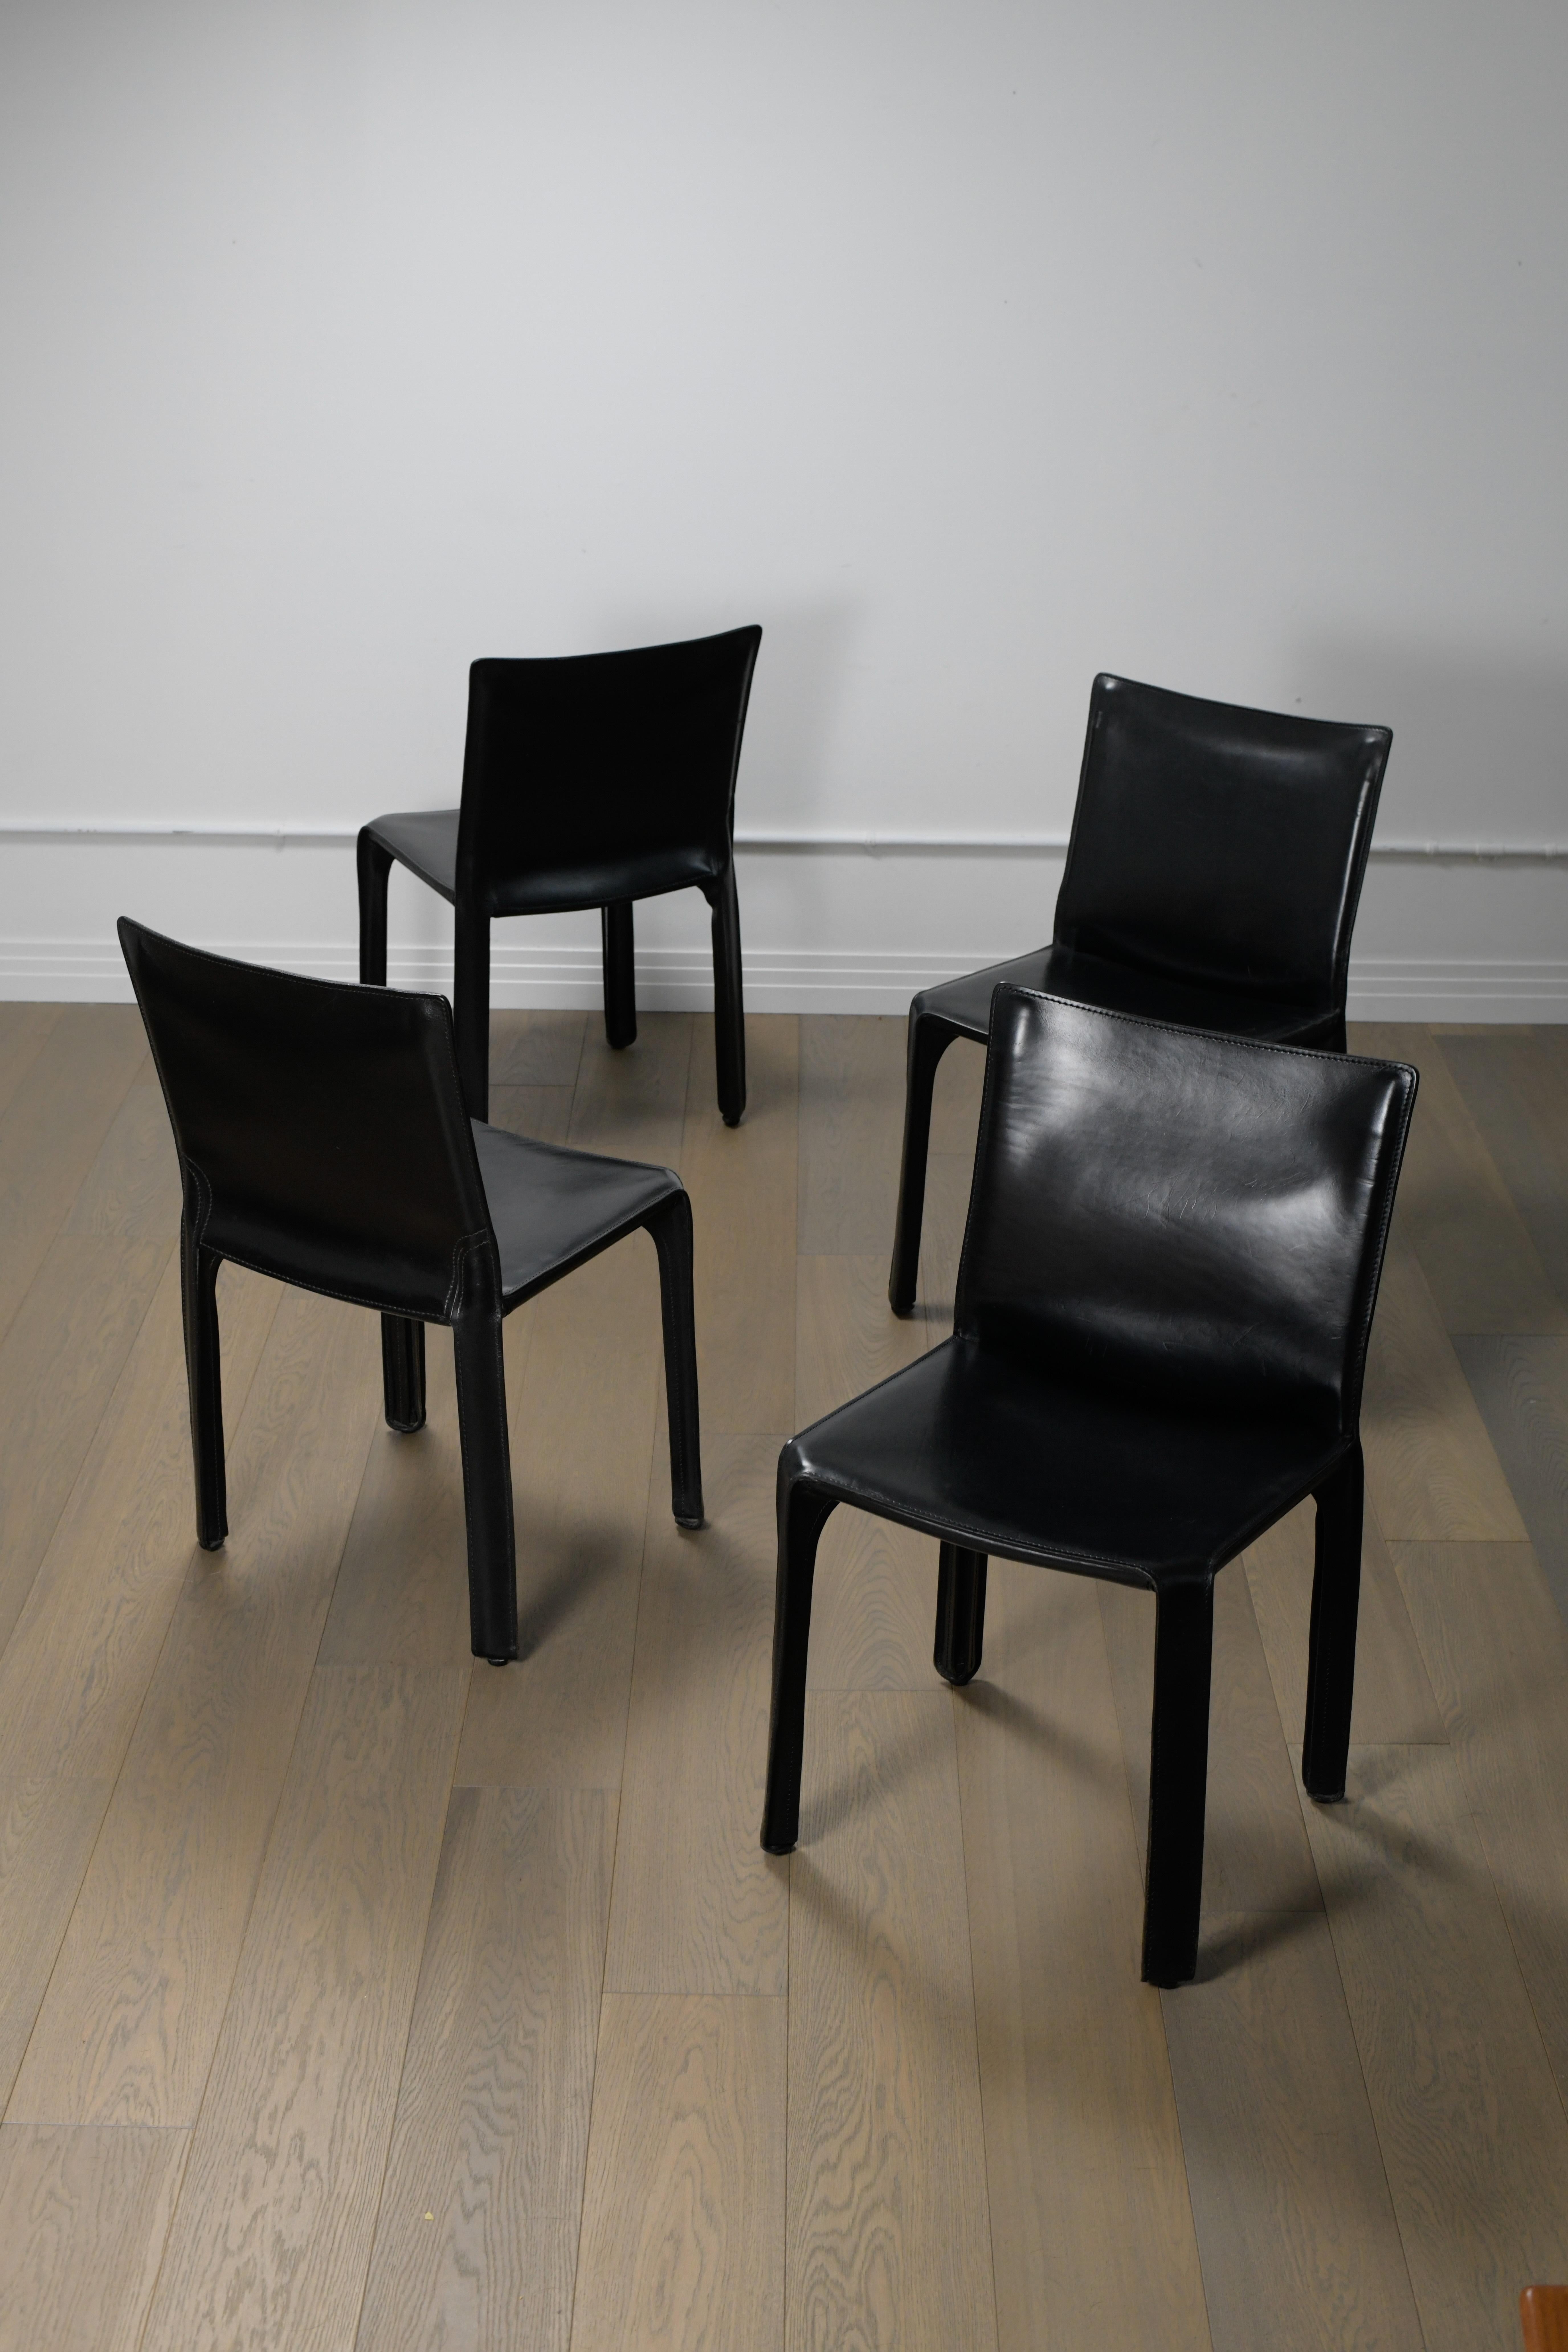 Ensemble de quatre chaises Cab Mario Bellini des années 1970 en cuir noir par Cassina. Ces belles chaises de salle à manger sont en bon état avec une belle patine correspondant à leur âge. Il y a quelques petites égratignures sur les sièges et le